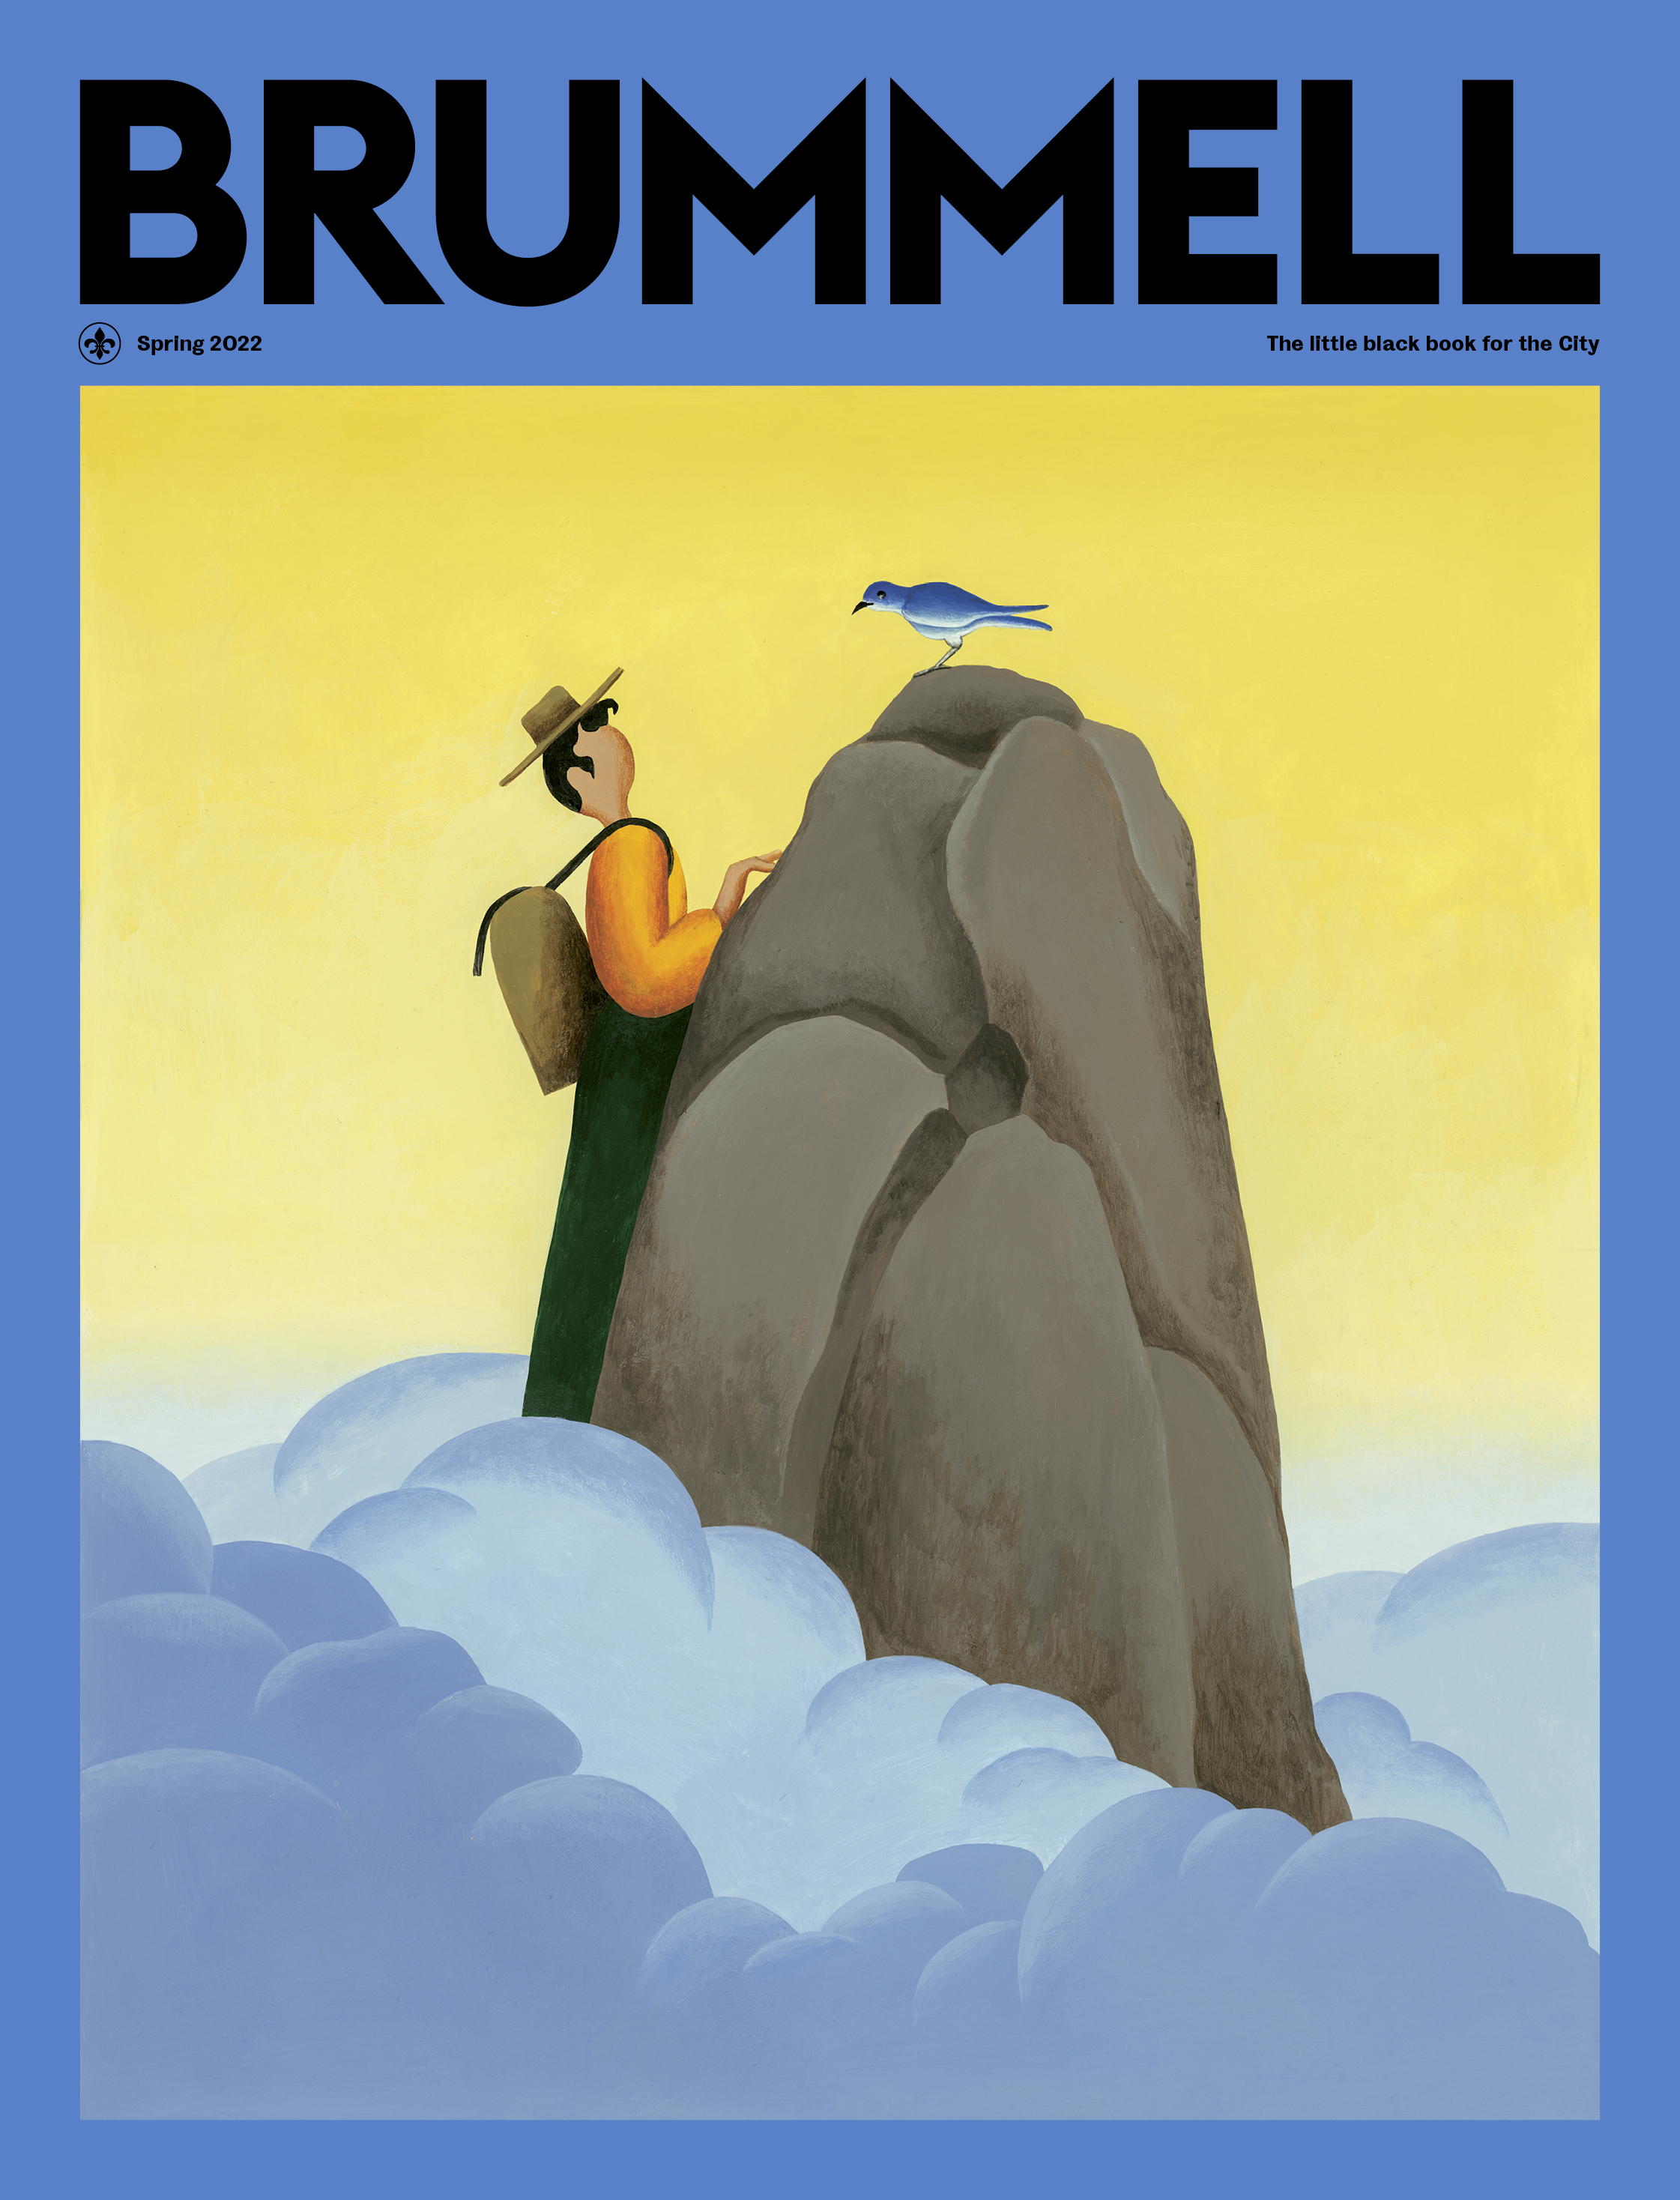 Brummell's spring 2023 cover illustration